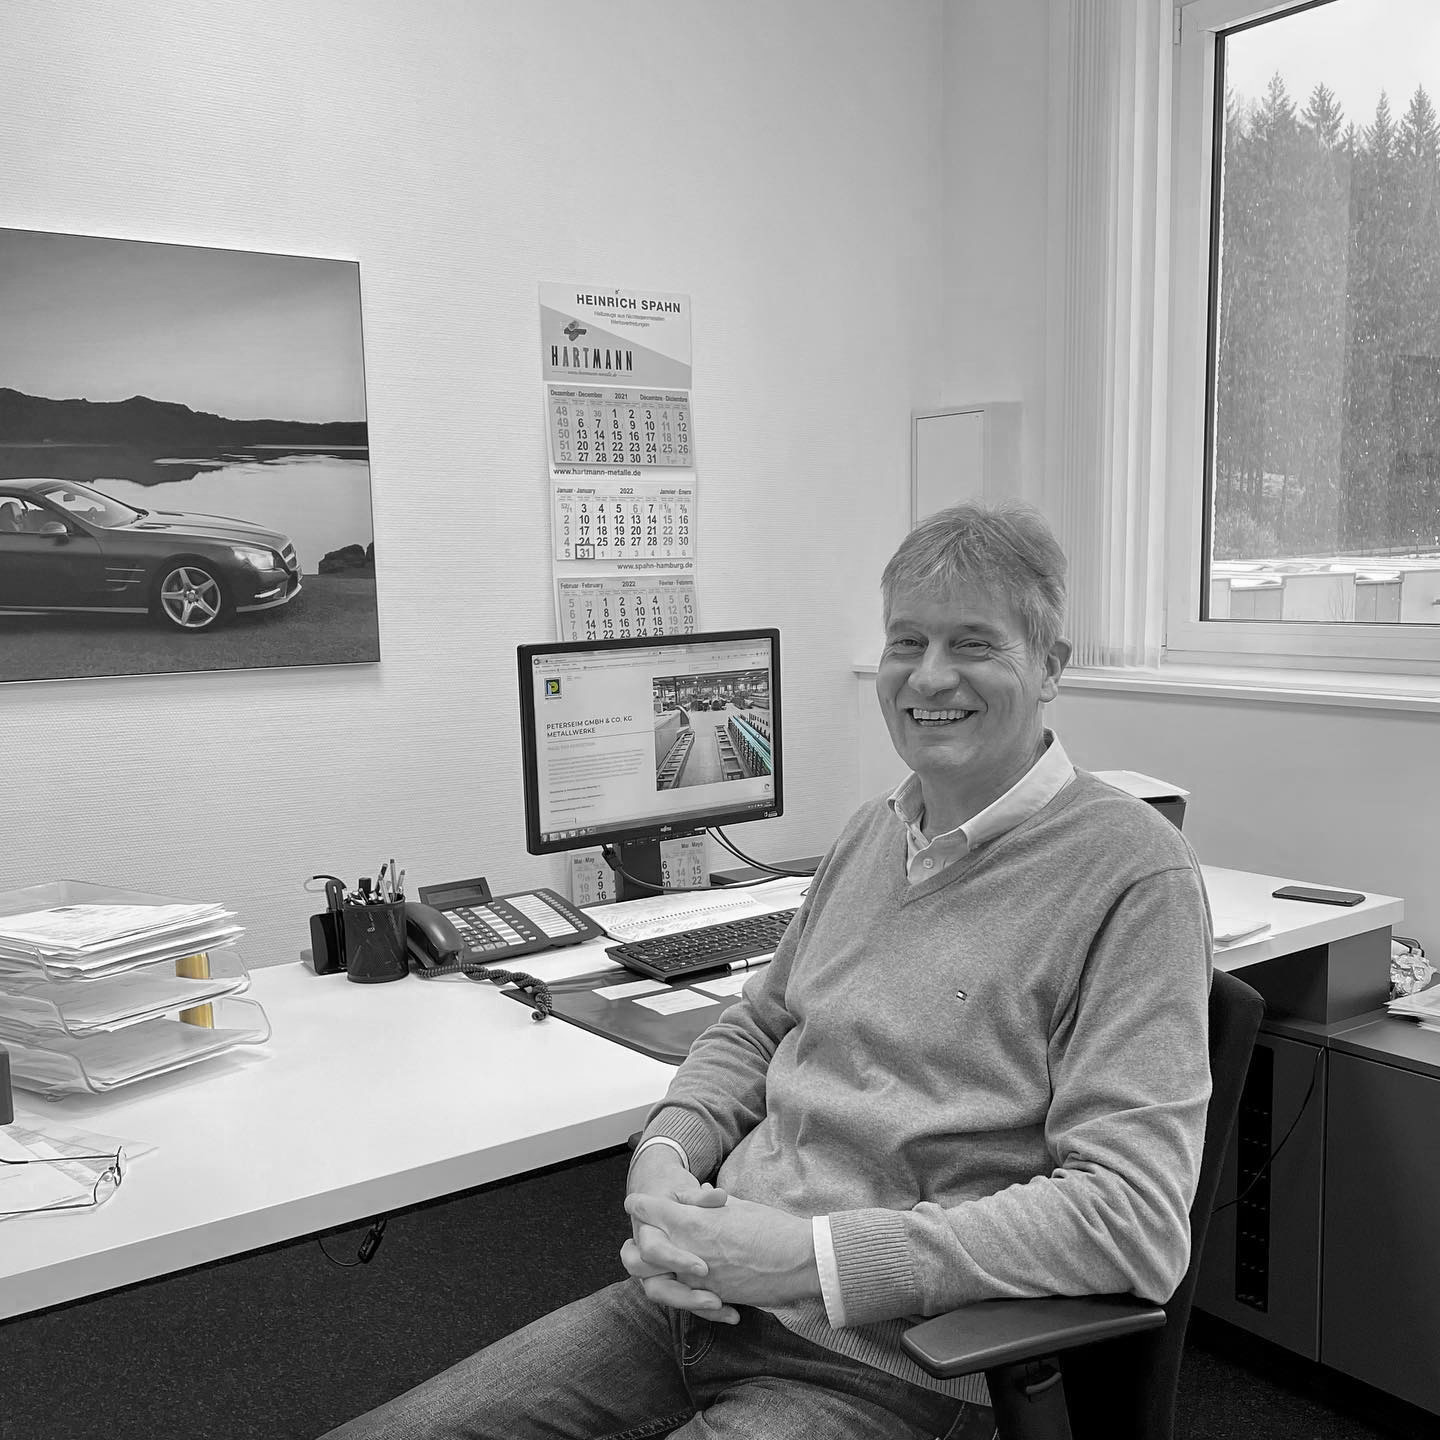 We congratulate Michael Stracke on his 40th company anniversary